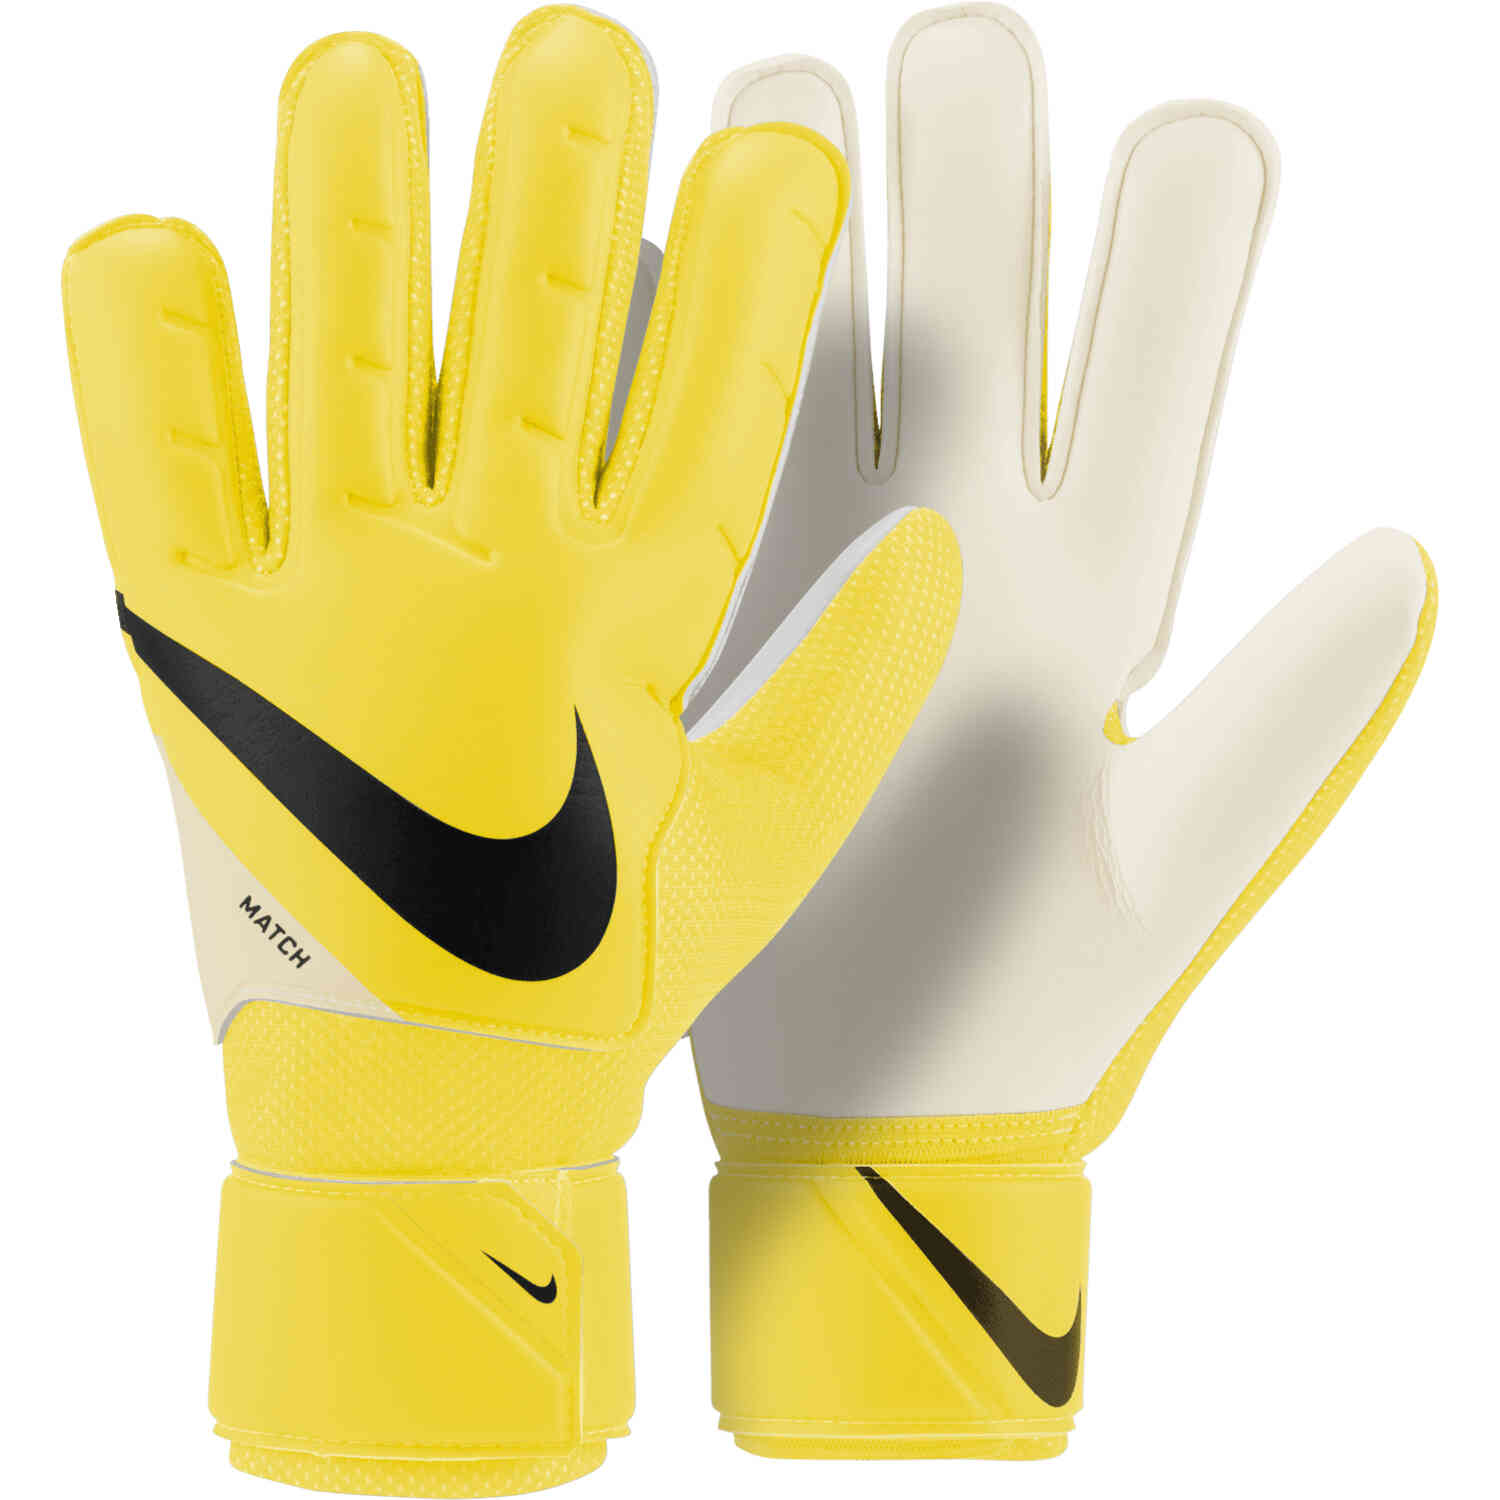 soccer goalie gloves